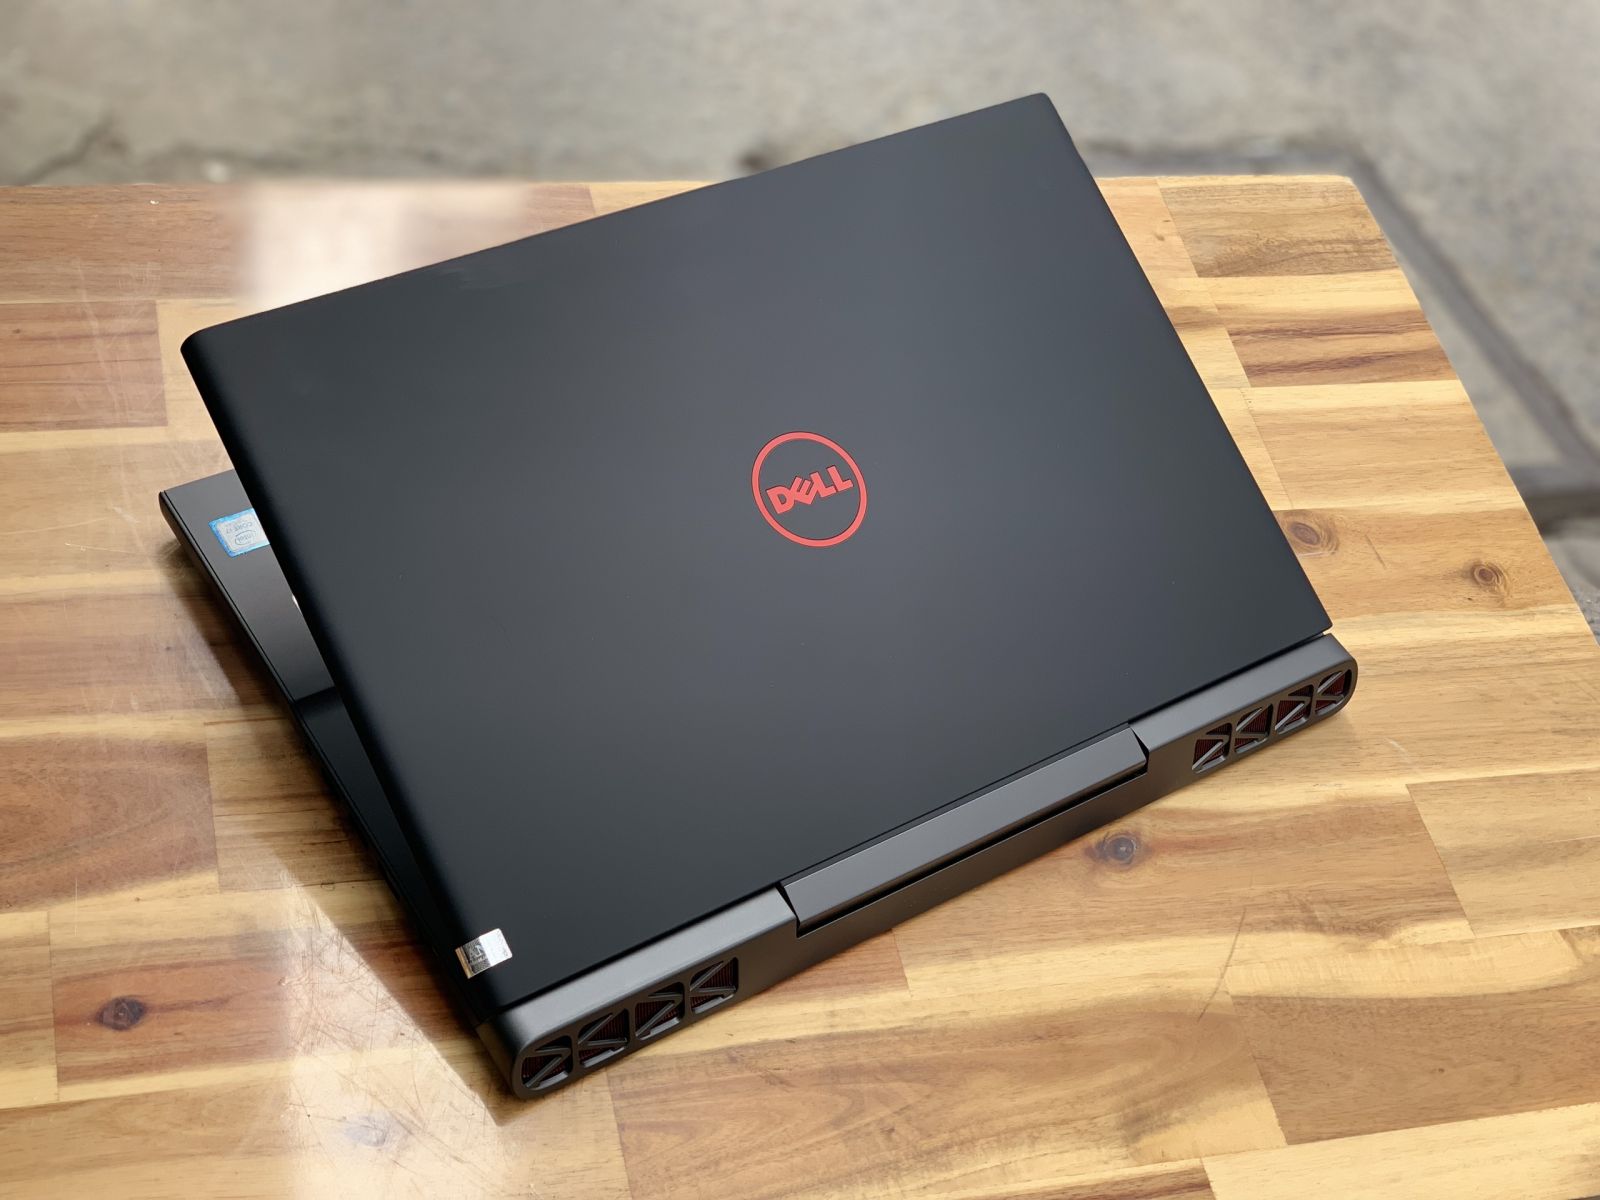 Laptop Dell Gaming 7567/ i5 7300HQ/ 8G/ SSD128+500G/ GTX1050 4G/ 15.6in/ Chuyên Game/ Giá rẻ2